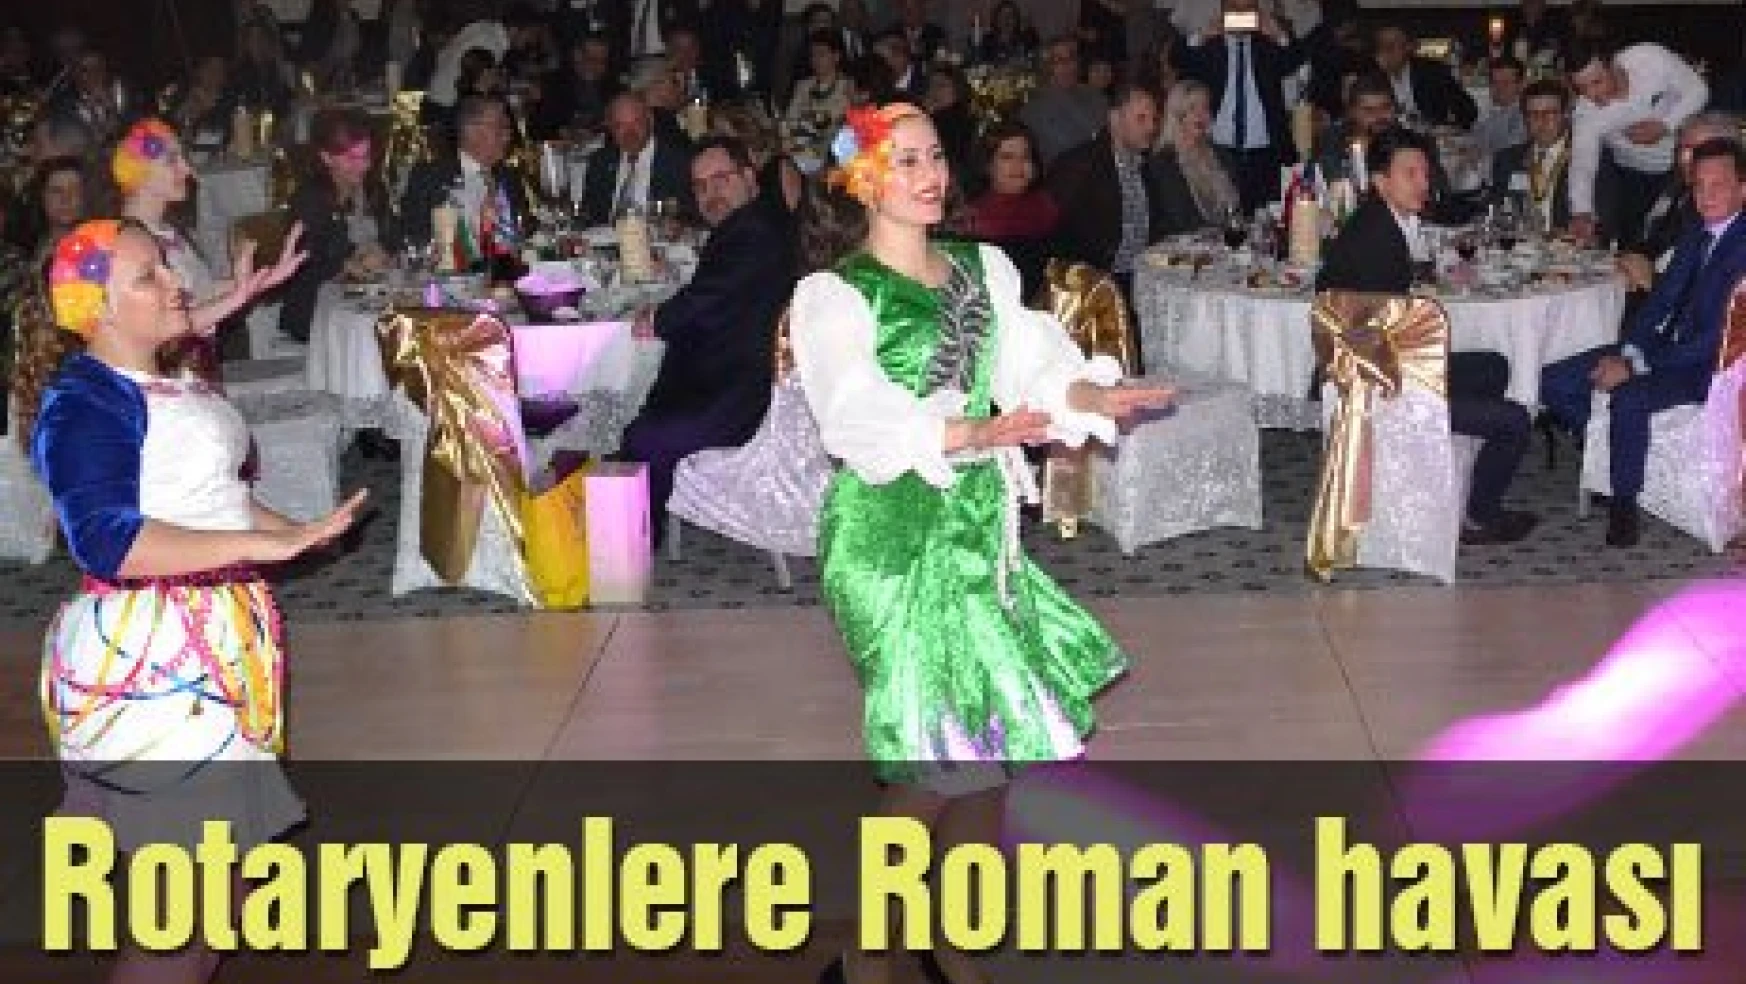 Rotaryenlere Roman havası